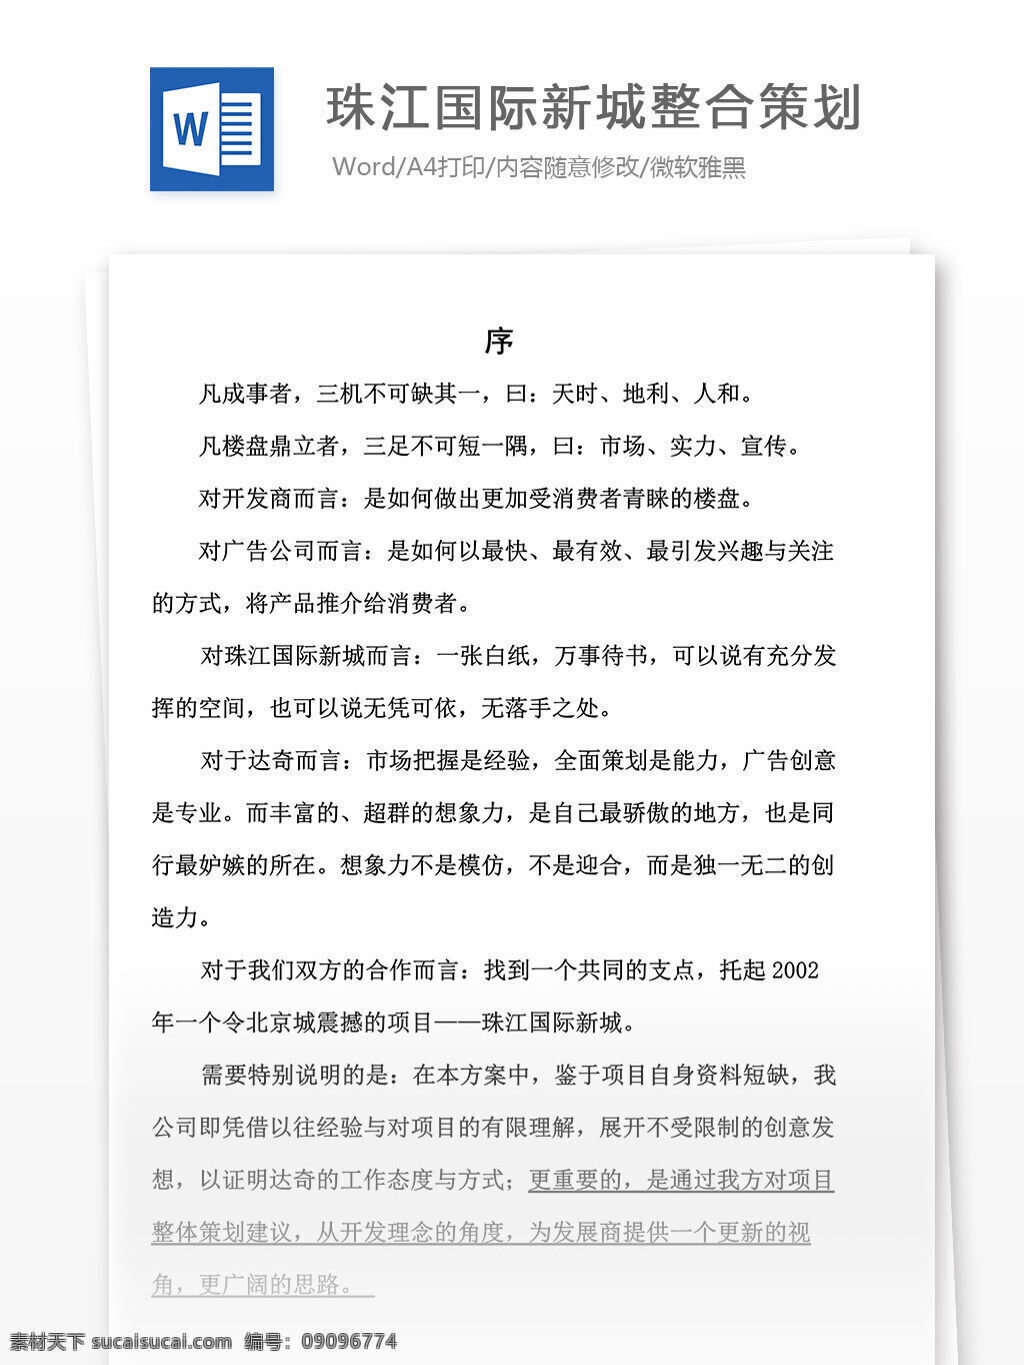 文档 word 文档模板 广告 文案 策划 广告策划 报告 珠江 国际新城 整合 整合策划